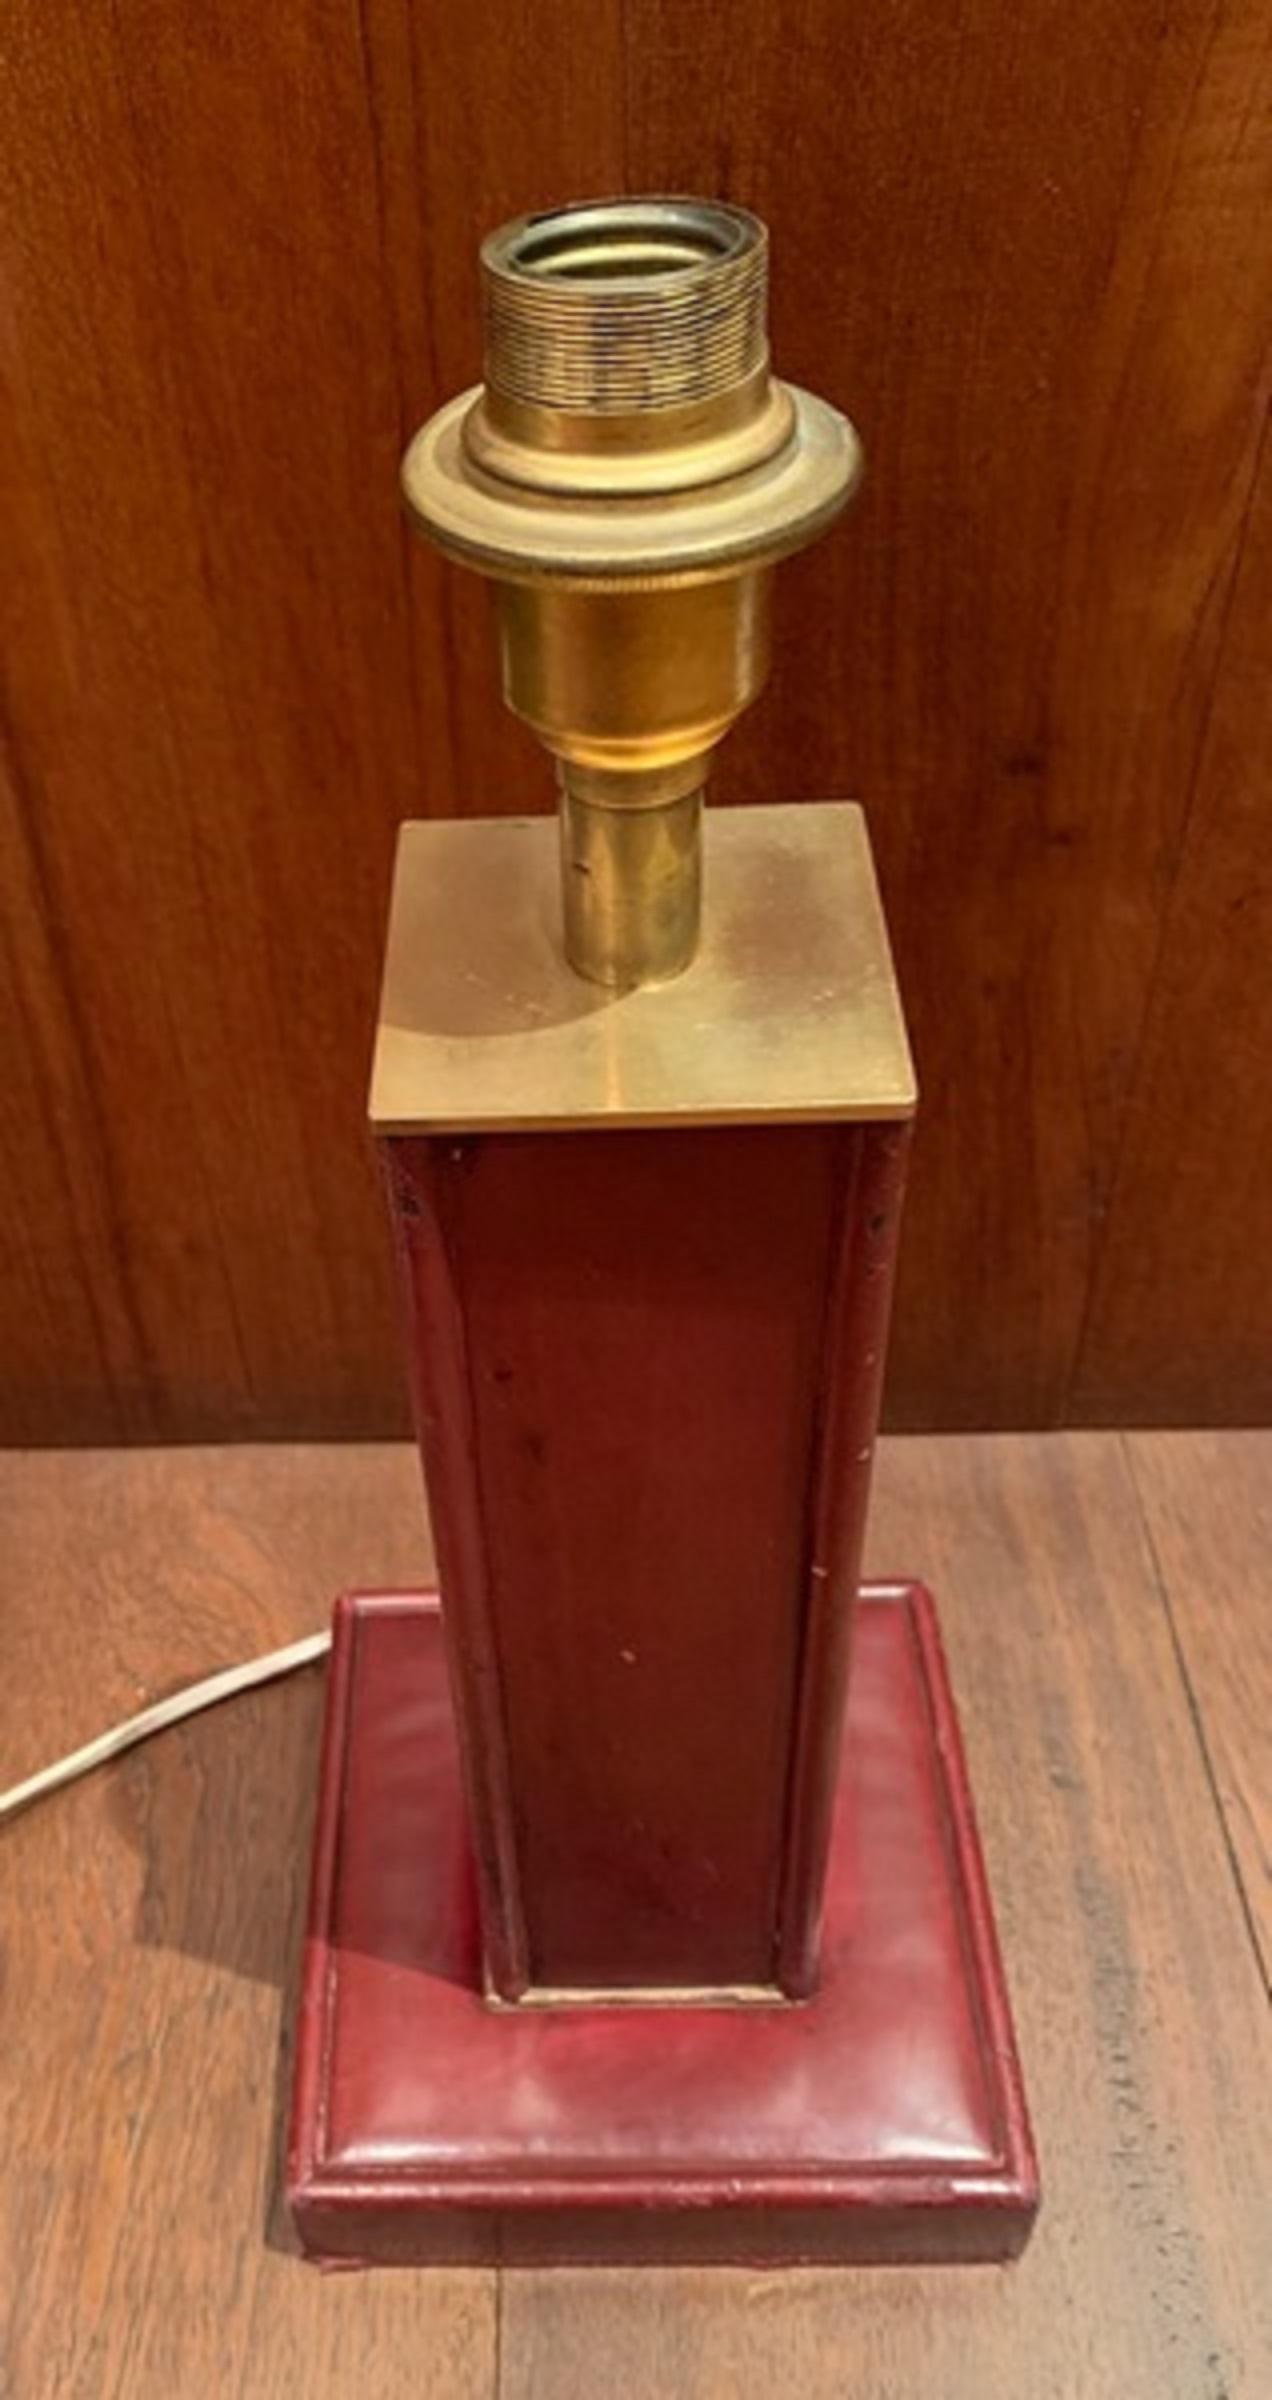 Vollständig mit burgunderfarbenem Sattelleder ummantelte Lampe mit viereckigem Schaft auf rechteckigem Sockel
Dupre Lafon 1940
Höhe ohne Ärmel: 31 cm.
Sockel: 16cm X 16cm.
Lauf: 7,5 cm X 7,5 cm.